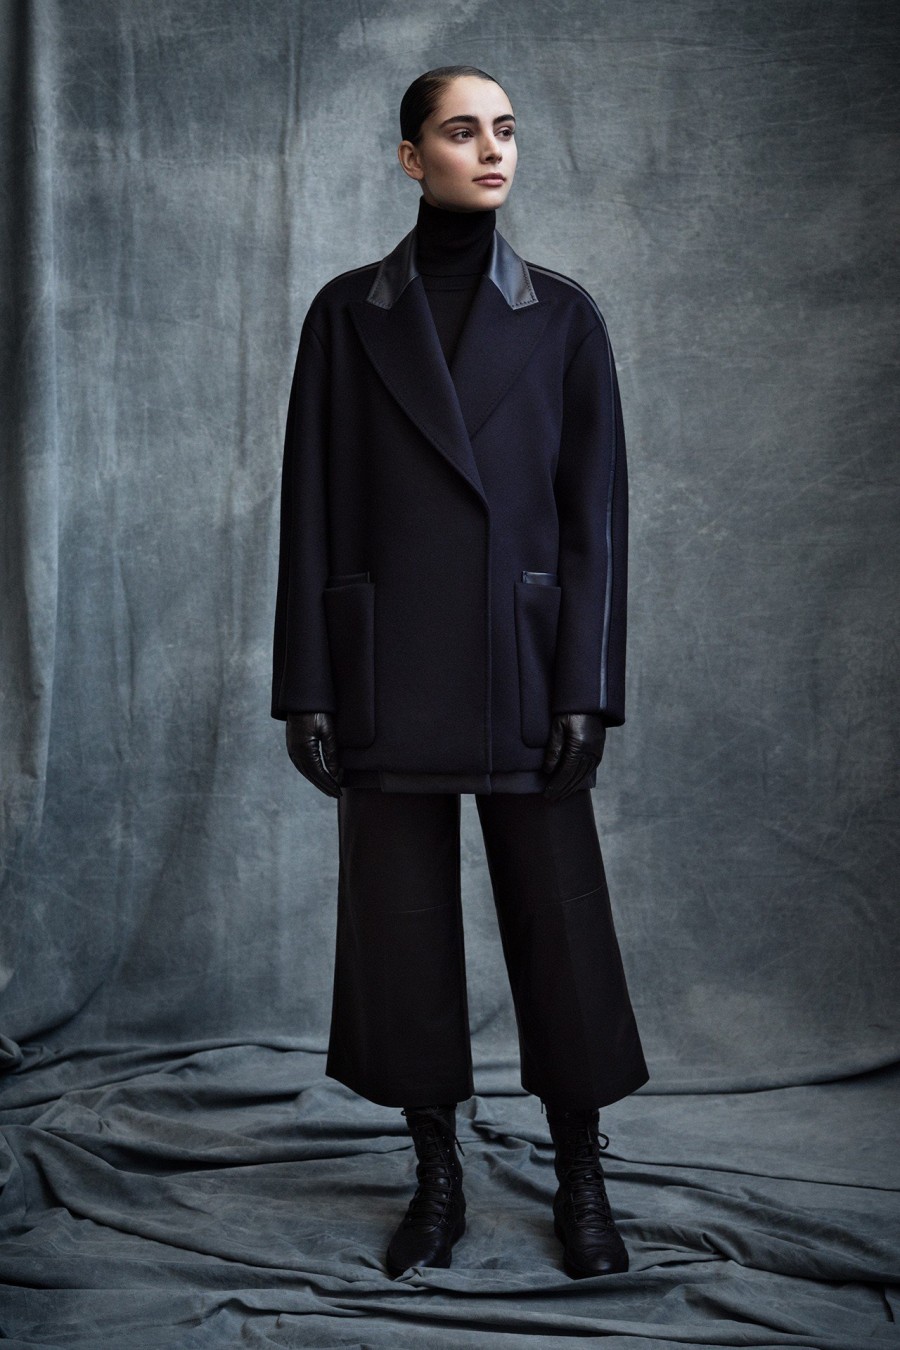 Τα νέα iconic παλτό που πρέπει να προσθέσετε στη χειμερινή σας γκαρνταρόμπα - Φωτογραφία 7